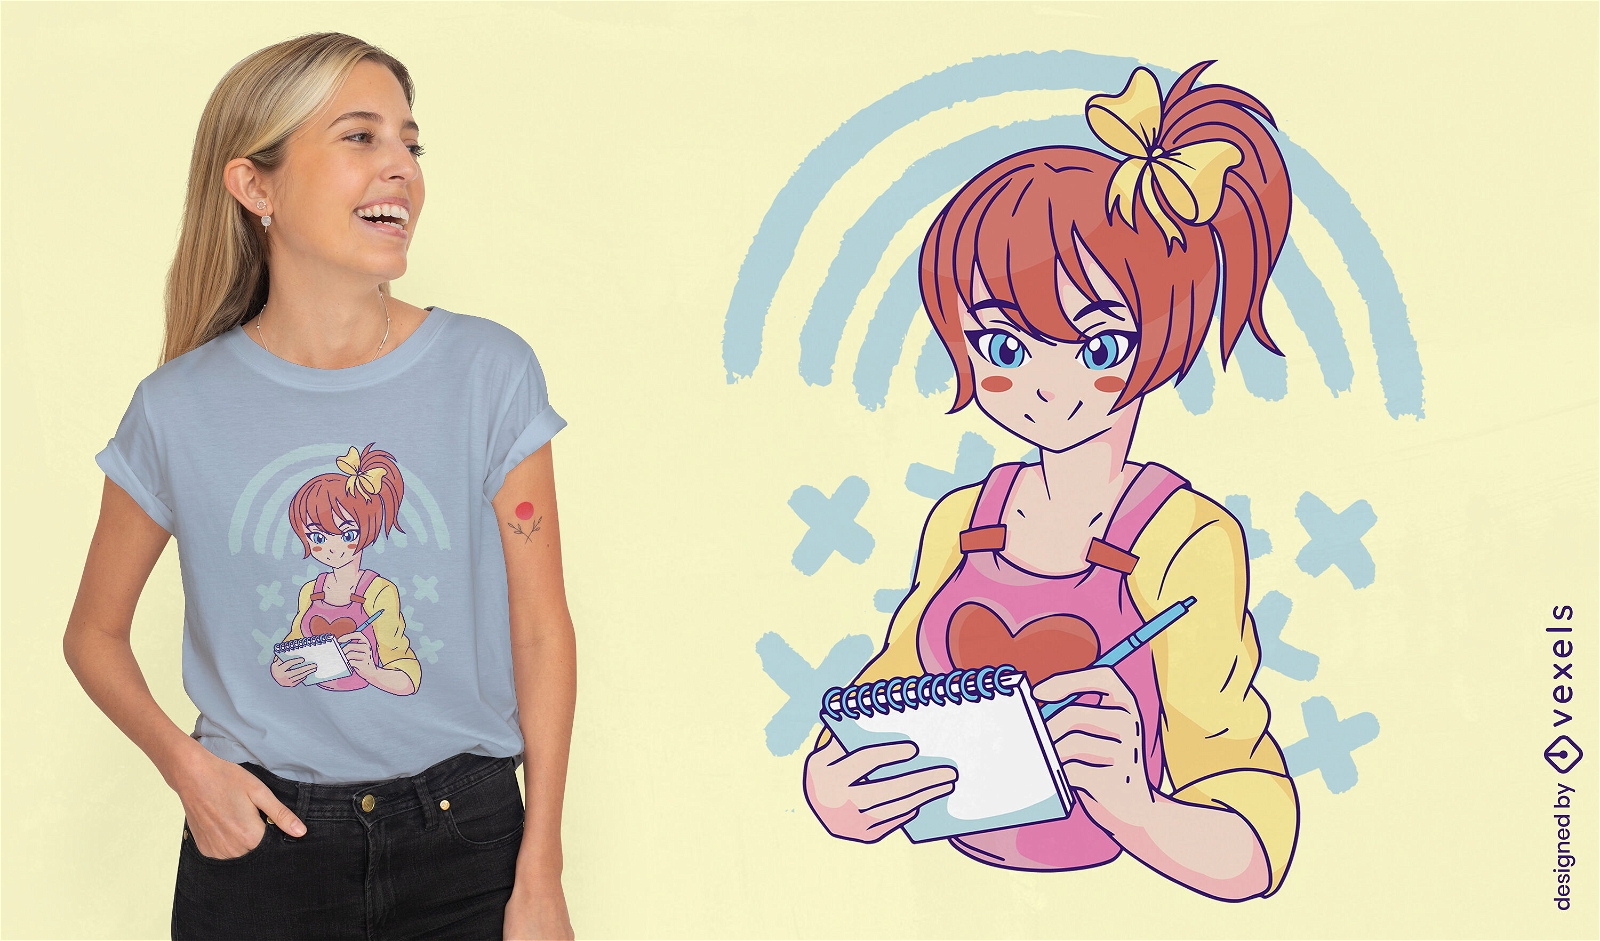 Garota de anime esbo?ando em design de camiseta de notebook